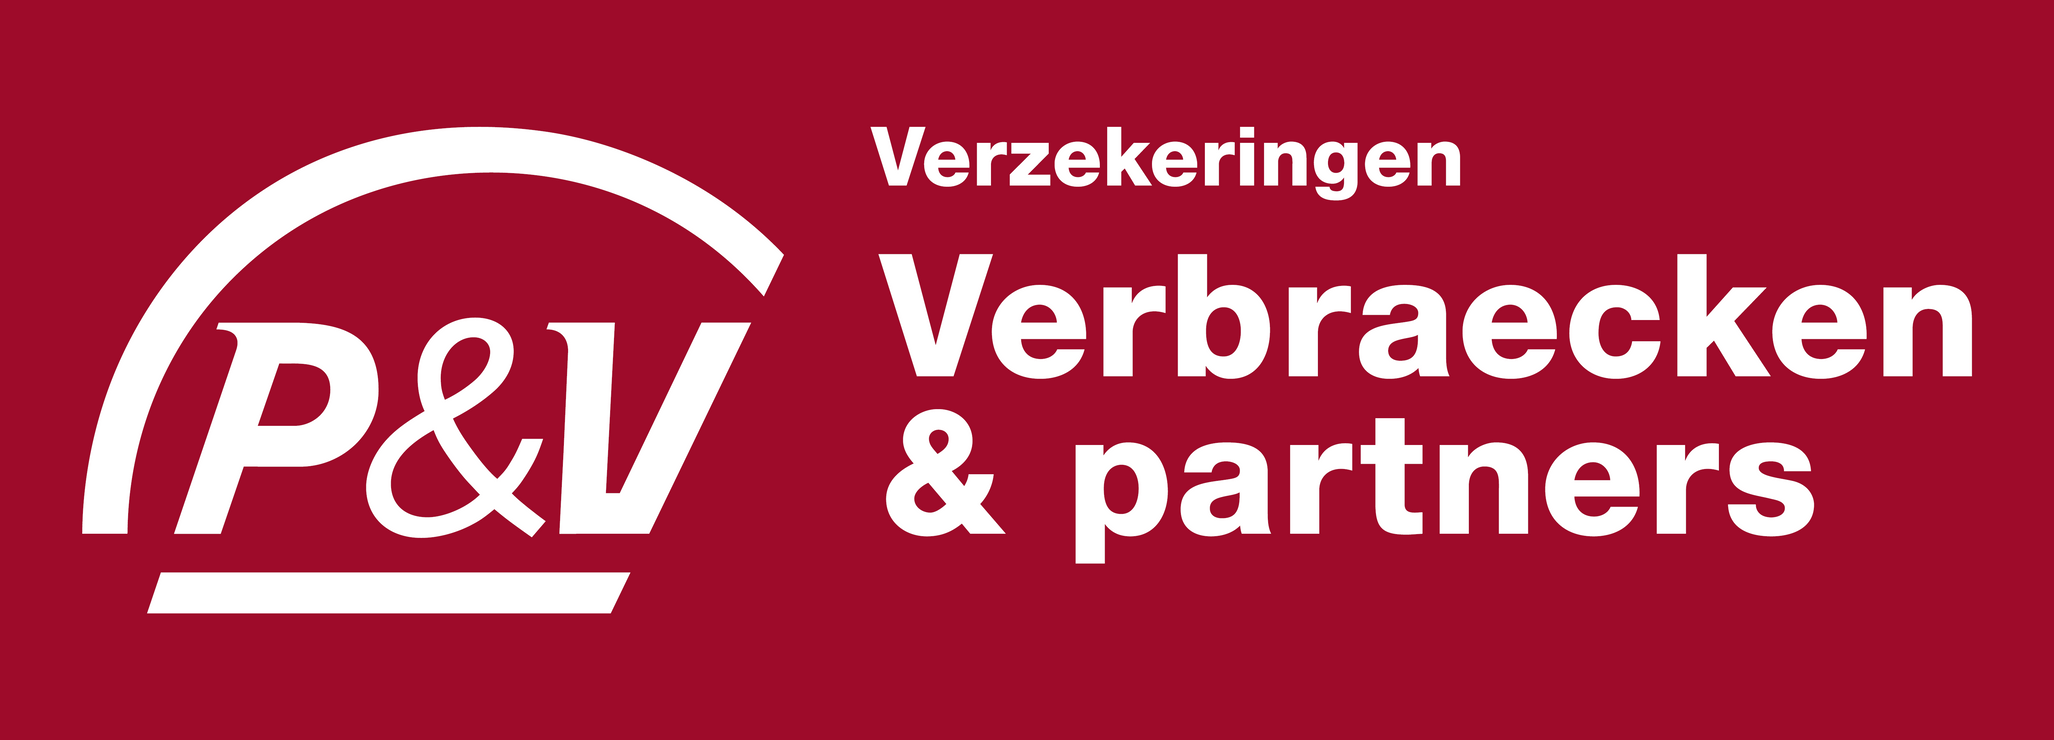 PV_sponsoring_verbraecken_DEF_01